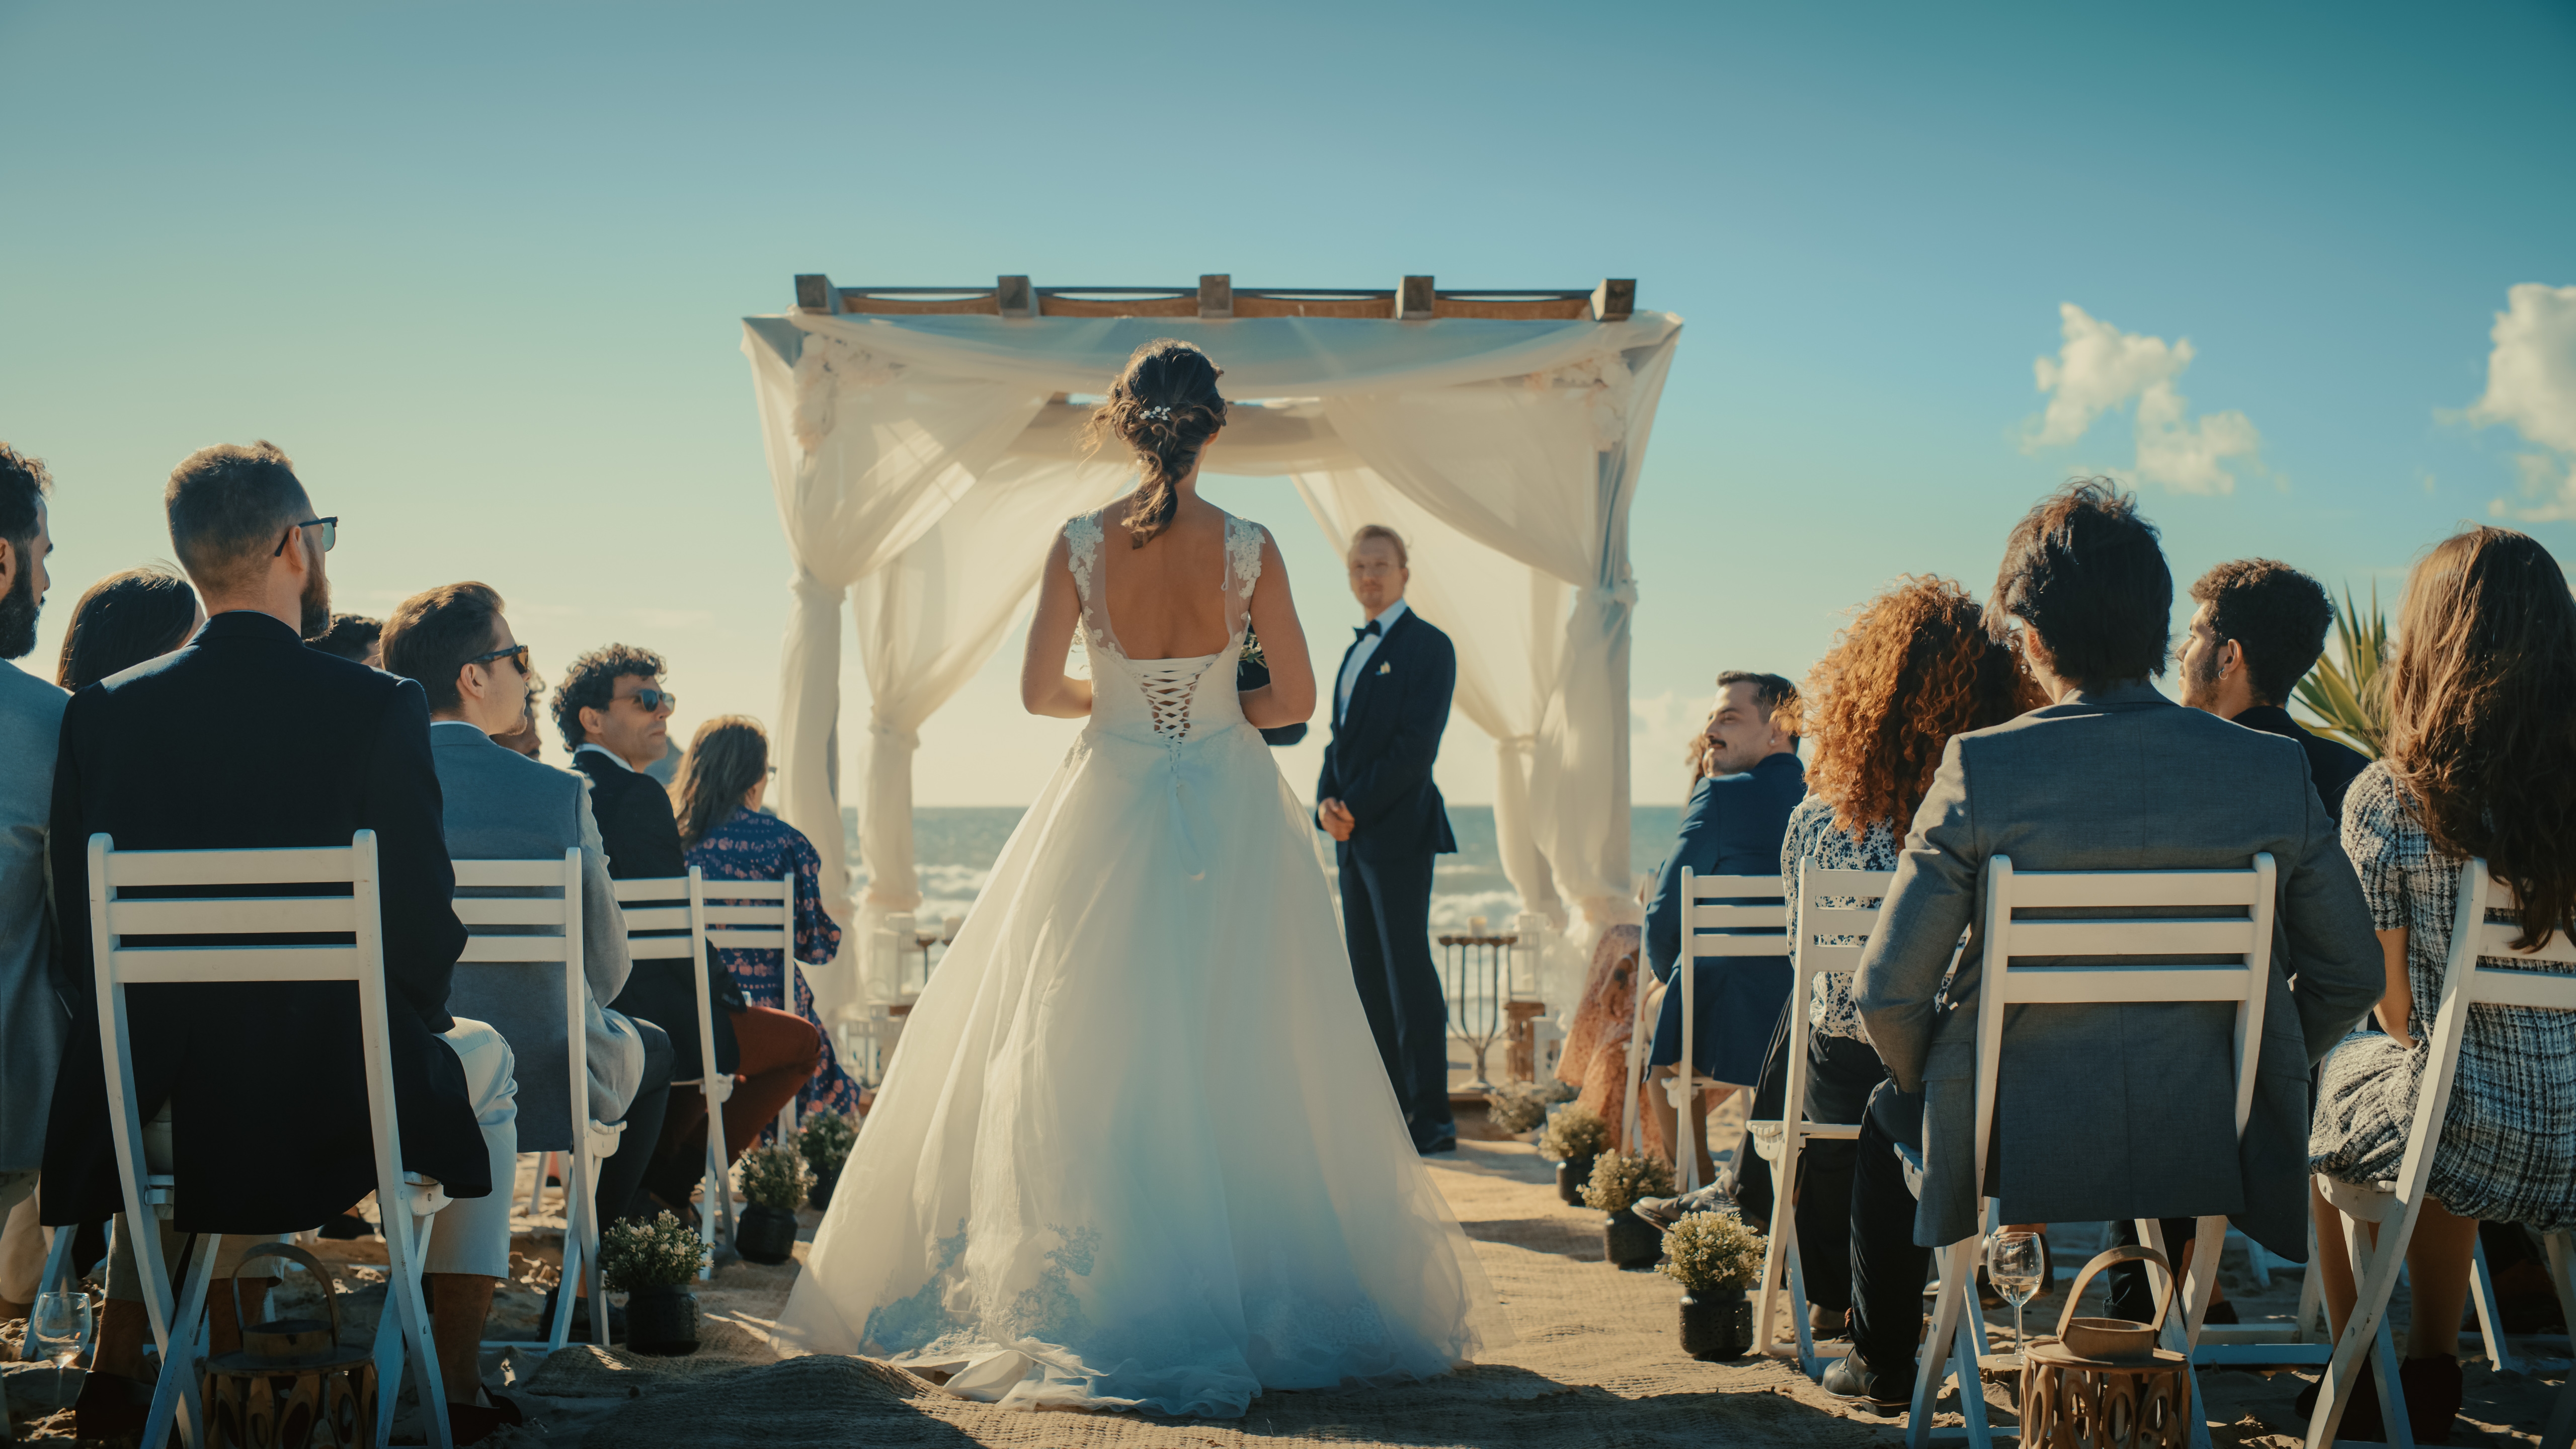 Die Braut schreitet zum Altar | Quelle: Shutterstock